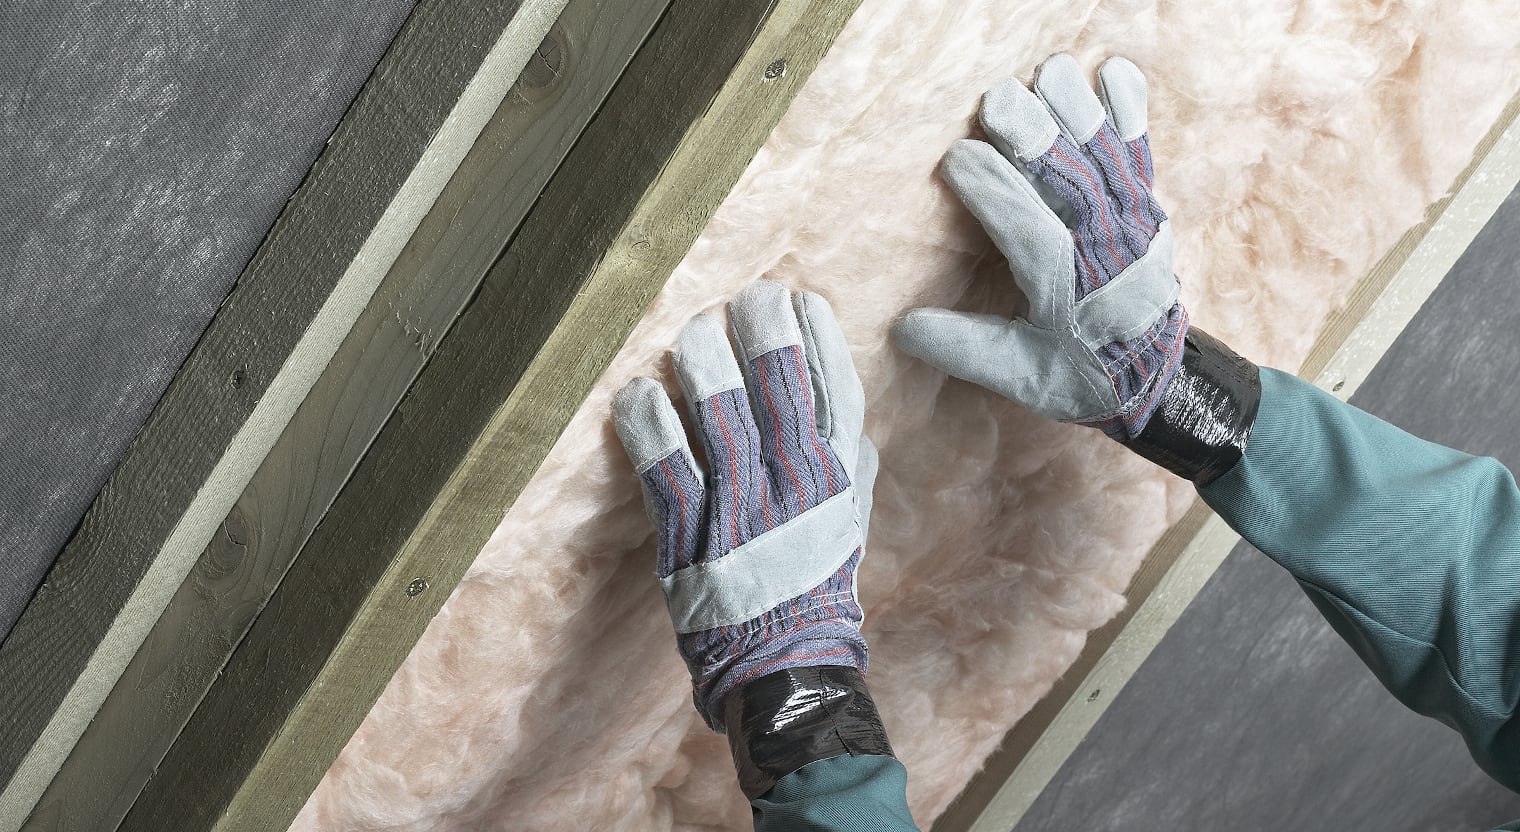 Ein Bauarbeiter setzt Isolationsmaterial ein und trägt dabei Handschuhe.